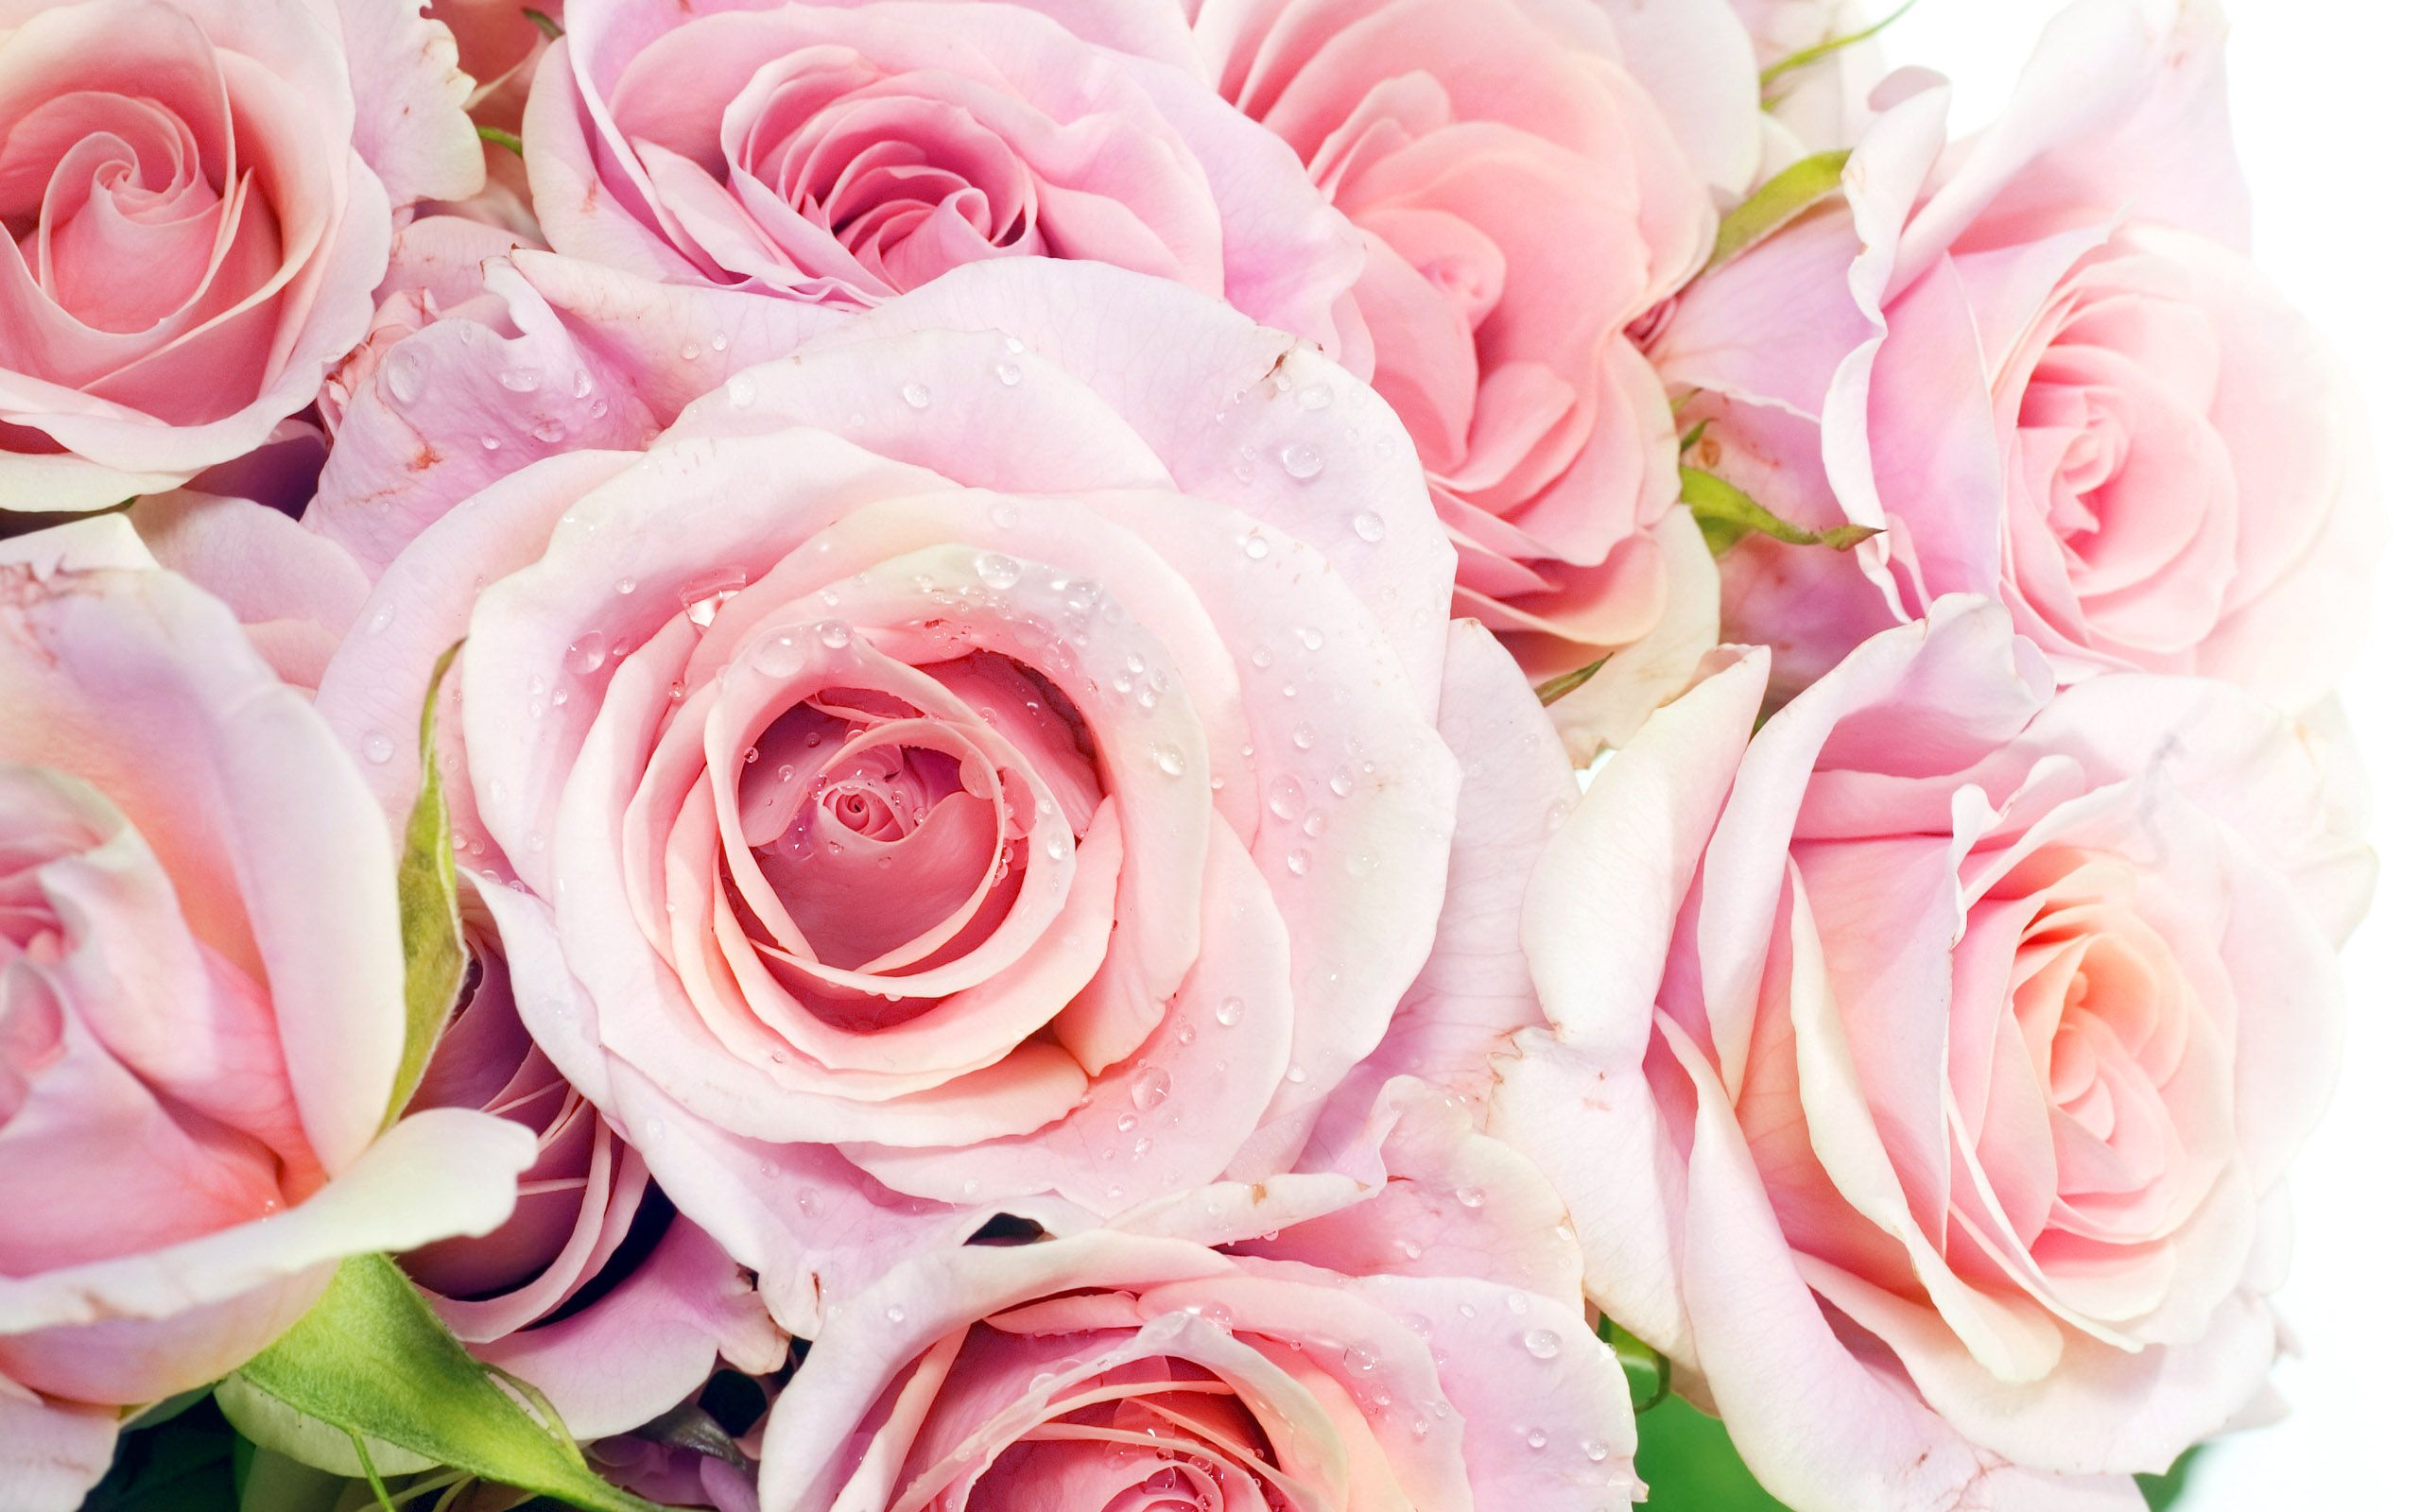 Pretty Pink Roses - Roses Wallpaper 34610937 - Fanpop